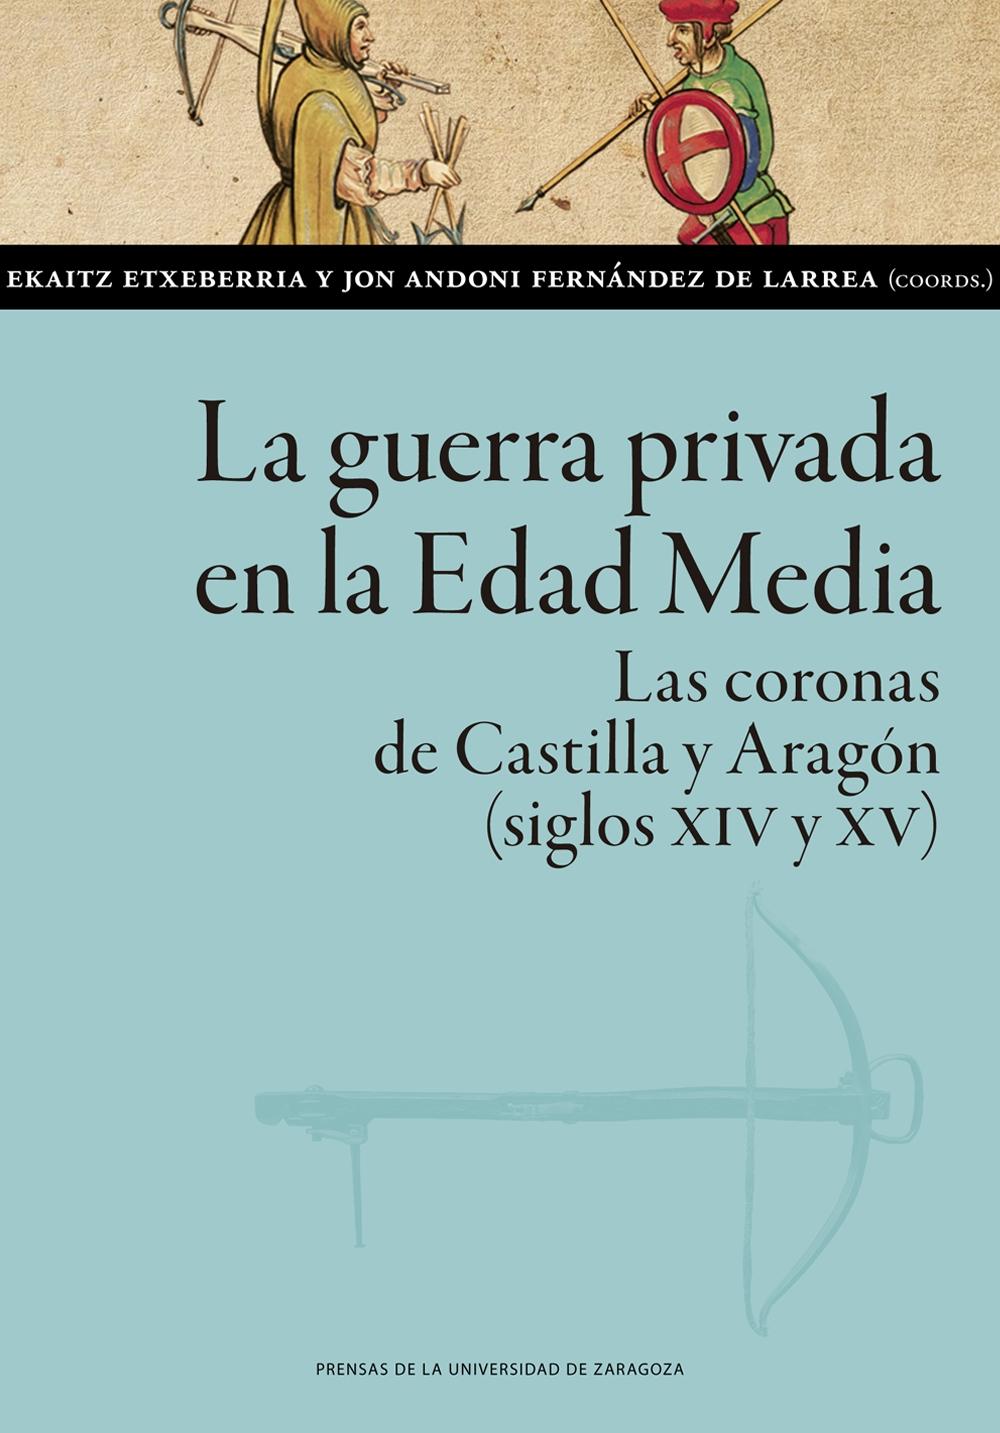 La guerra privada en la Edad Media "Las coronas de Castilla y Aragón (siglos XIV y XV)". 